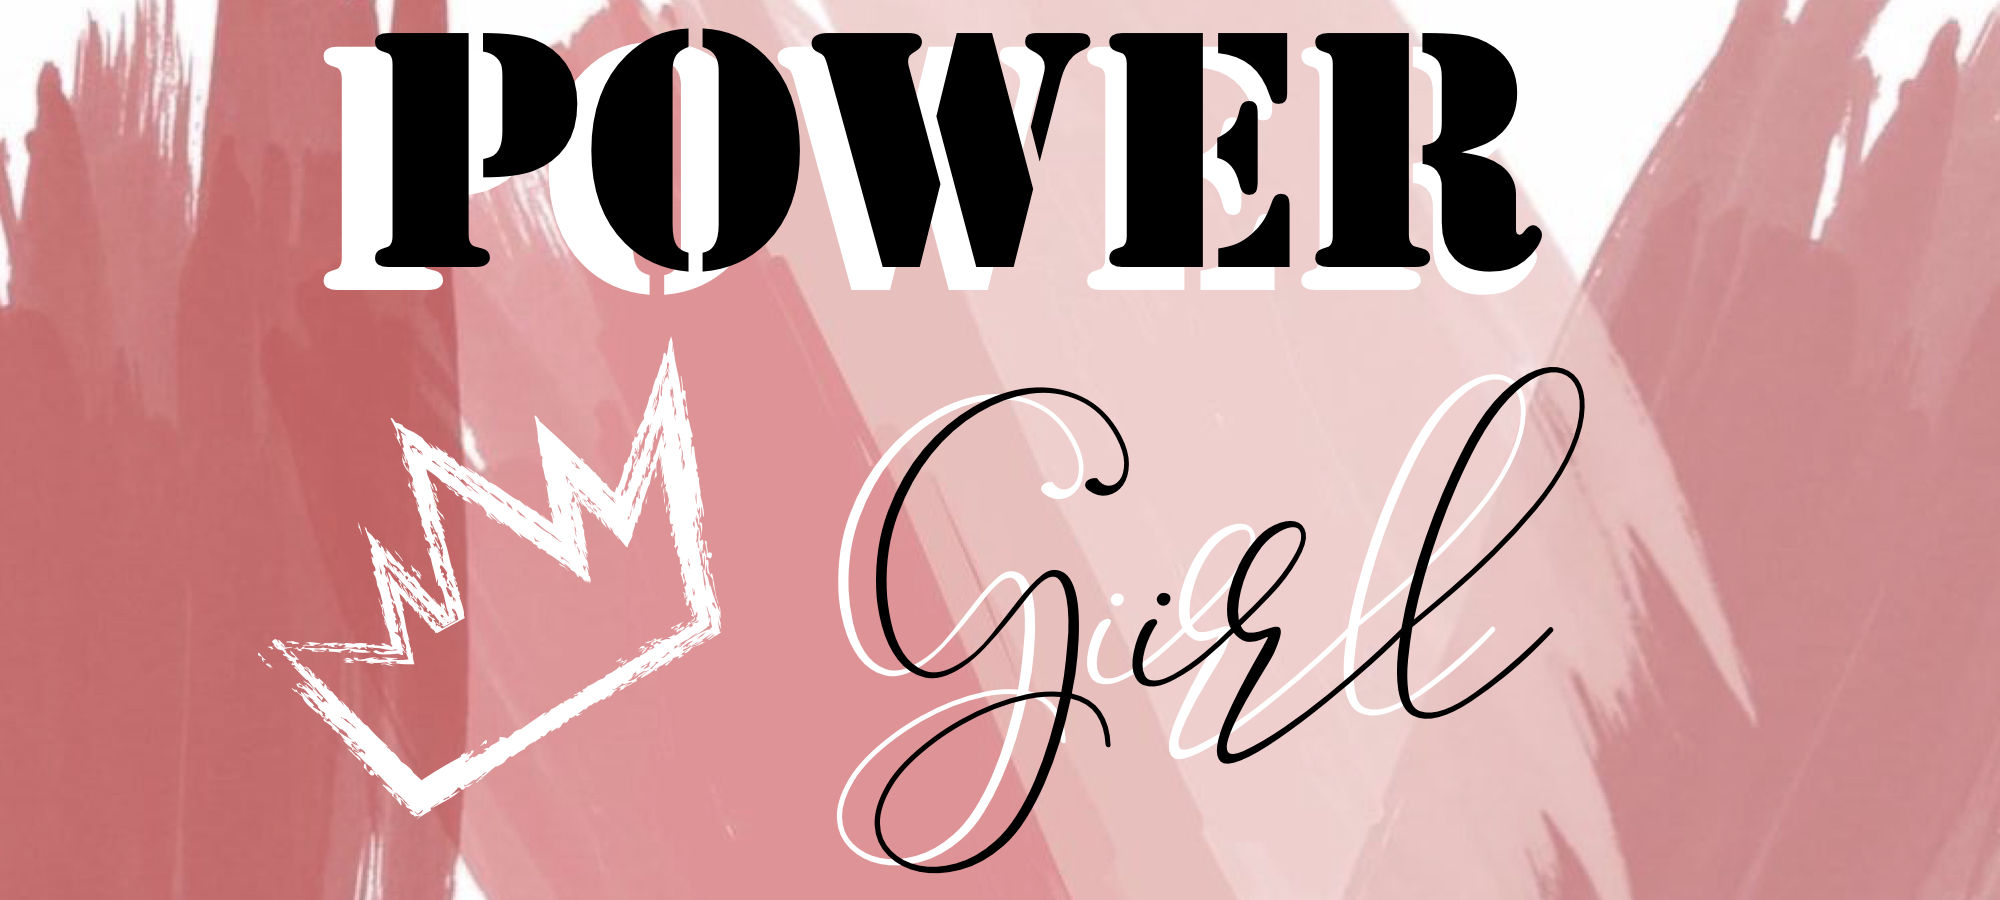 Power Girl  |  Tips para hacer tu imagen más poderosa